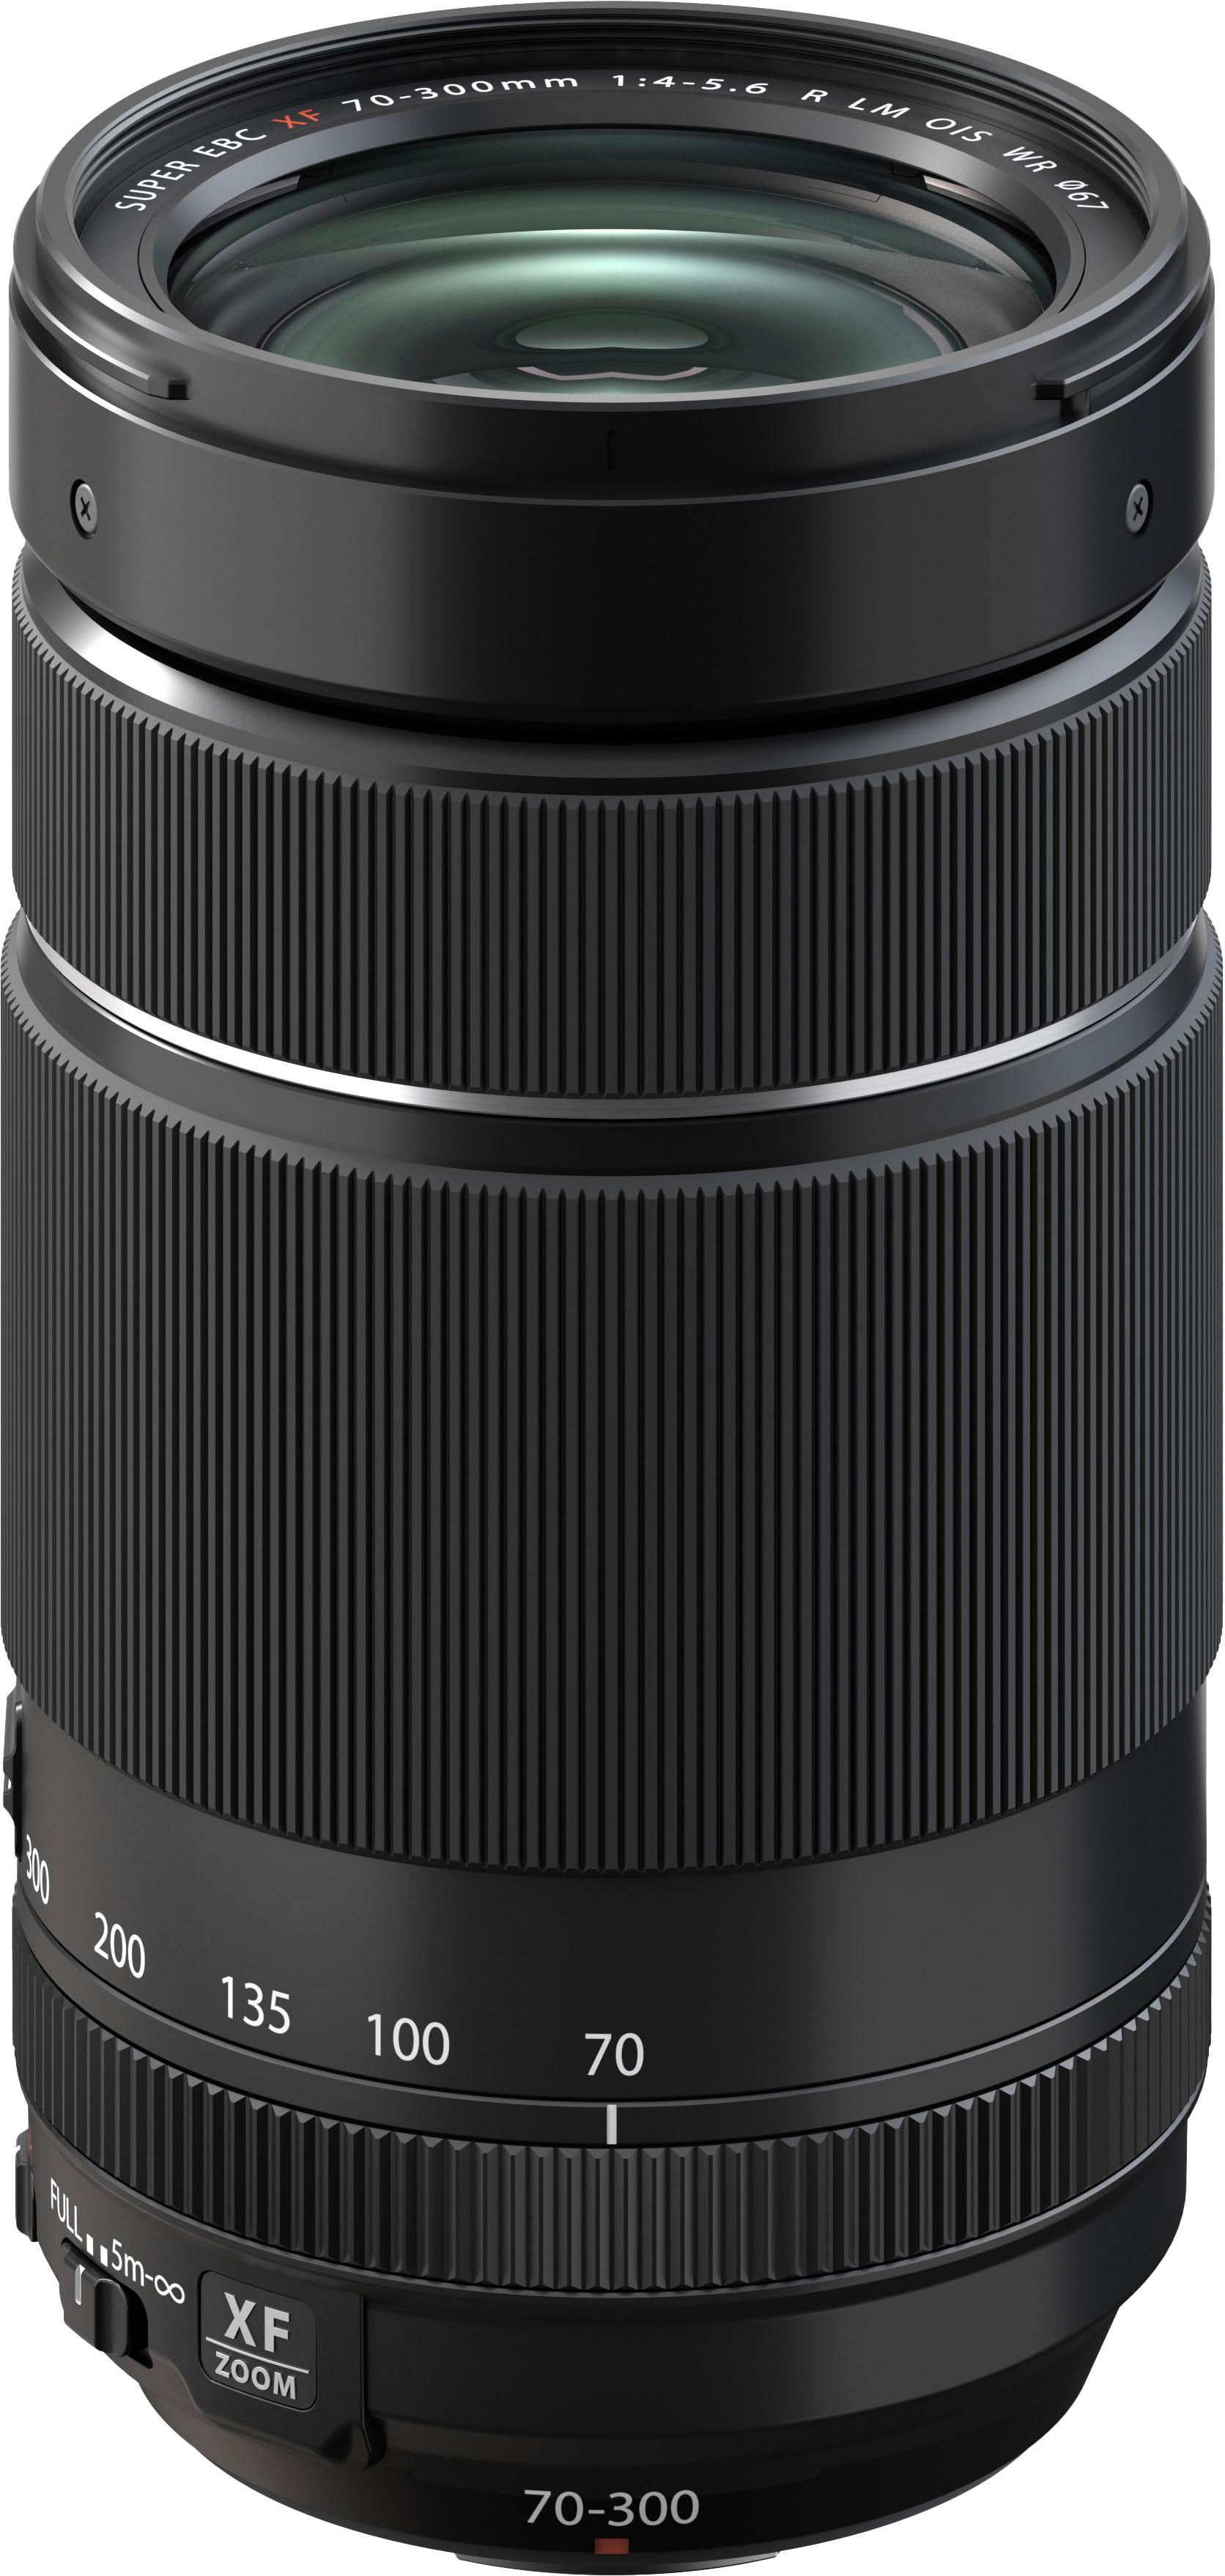 Fujifilm XF70-300mmF4-5.6 R LM OIS WR Lens Black 16666868 - Best Buy